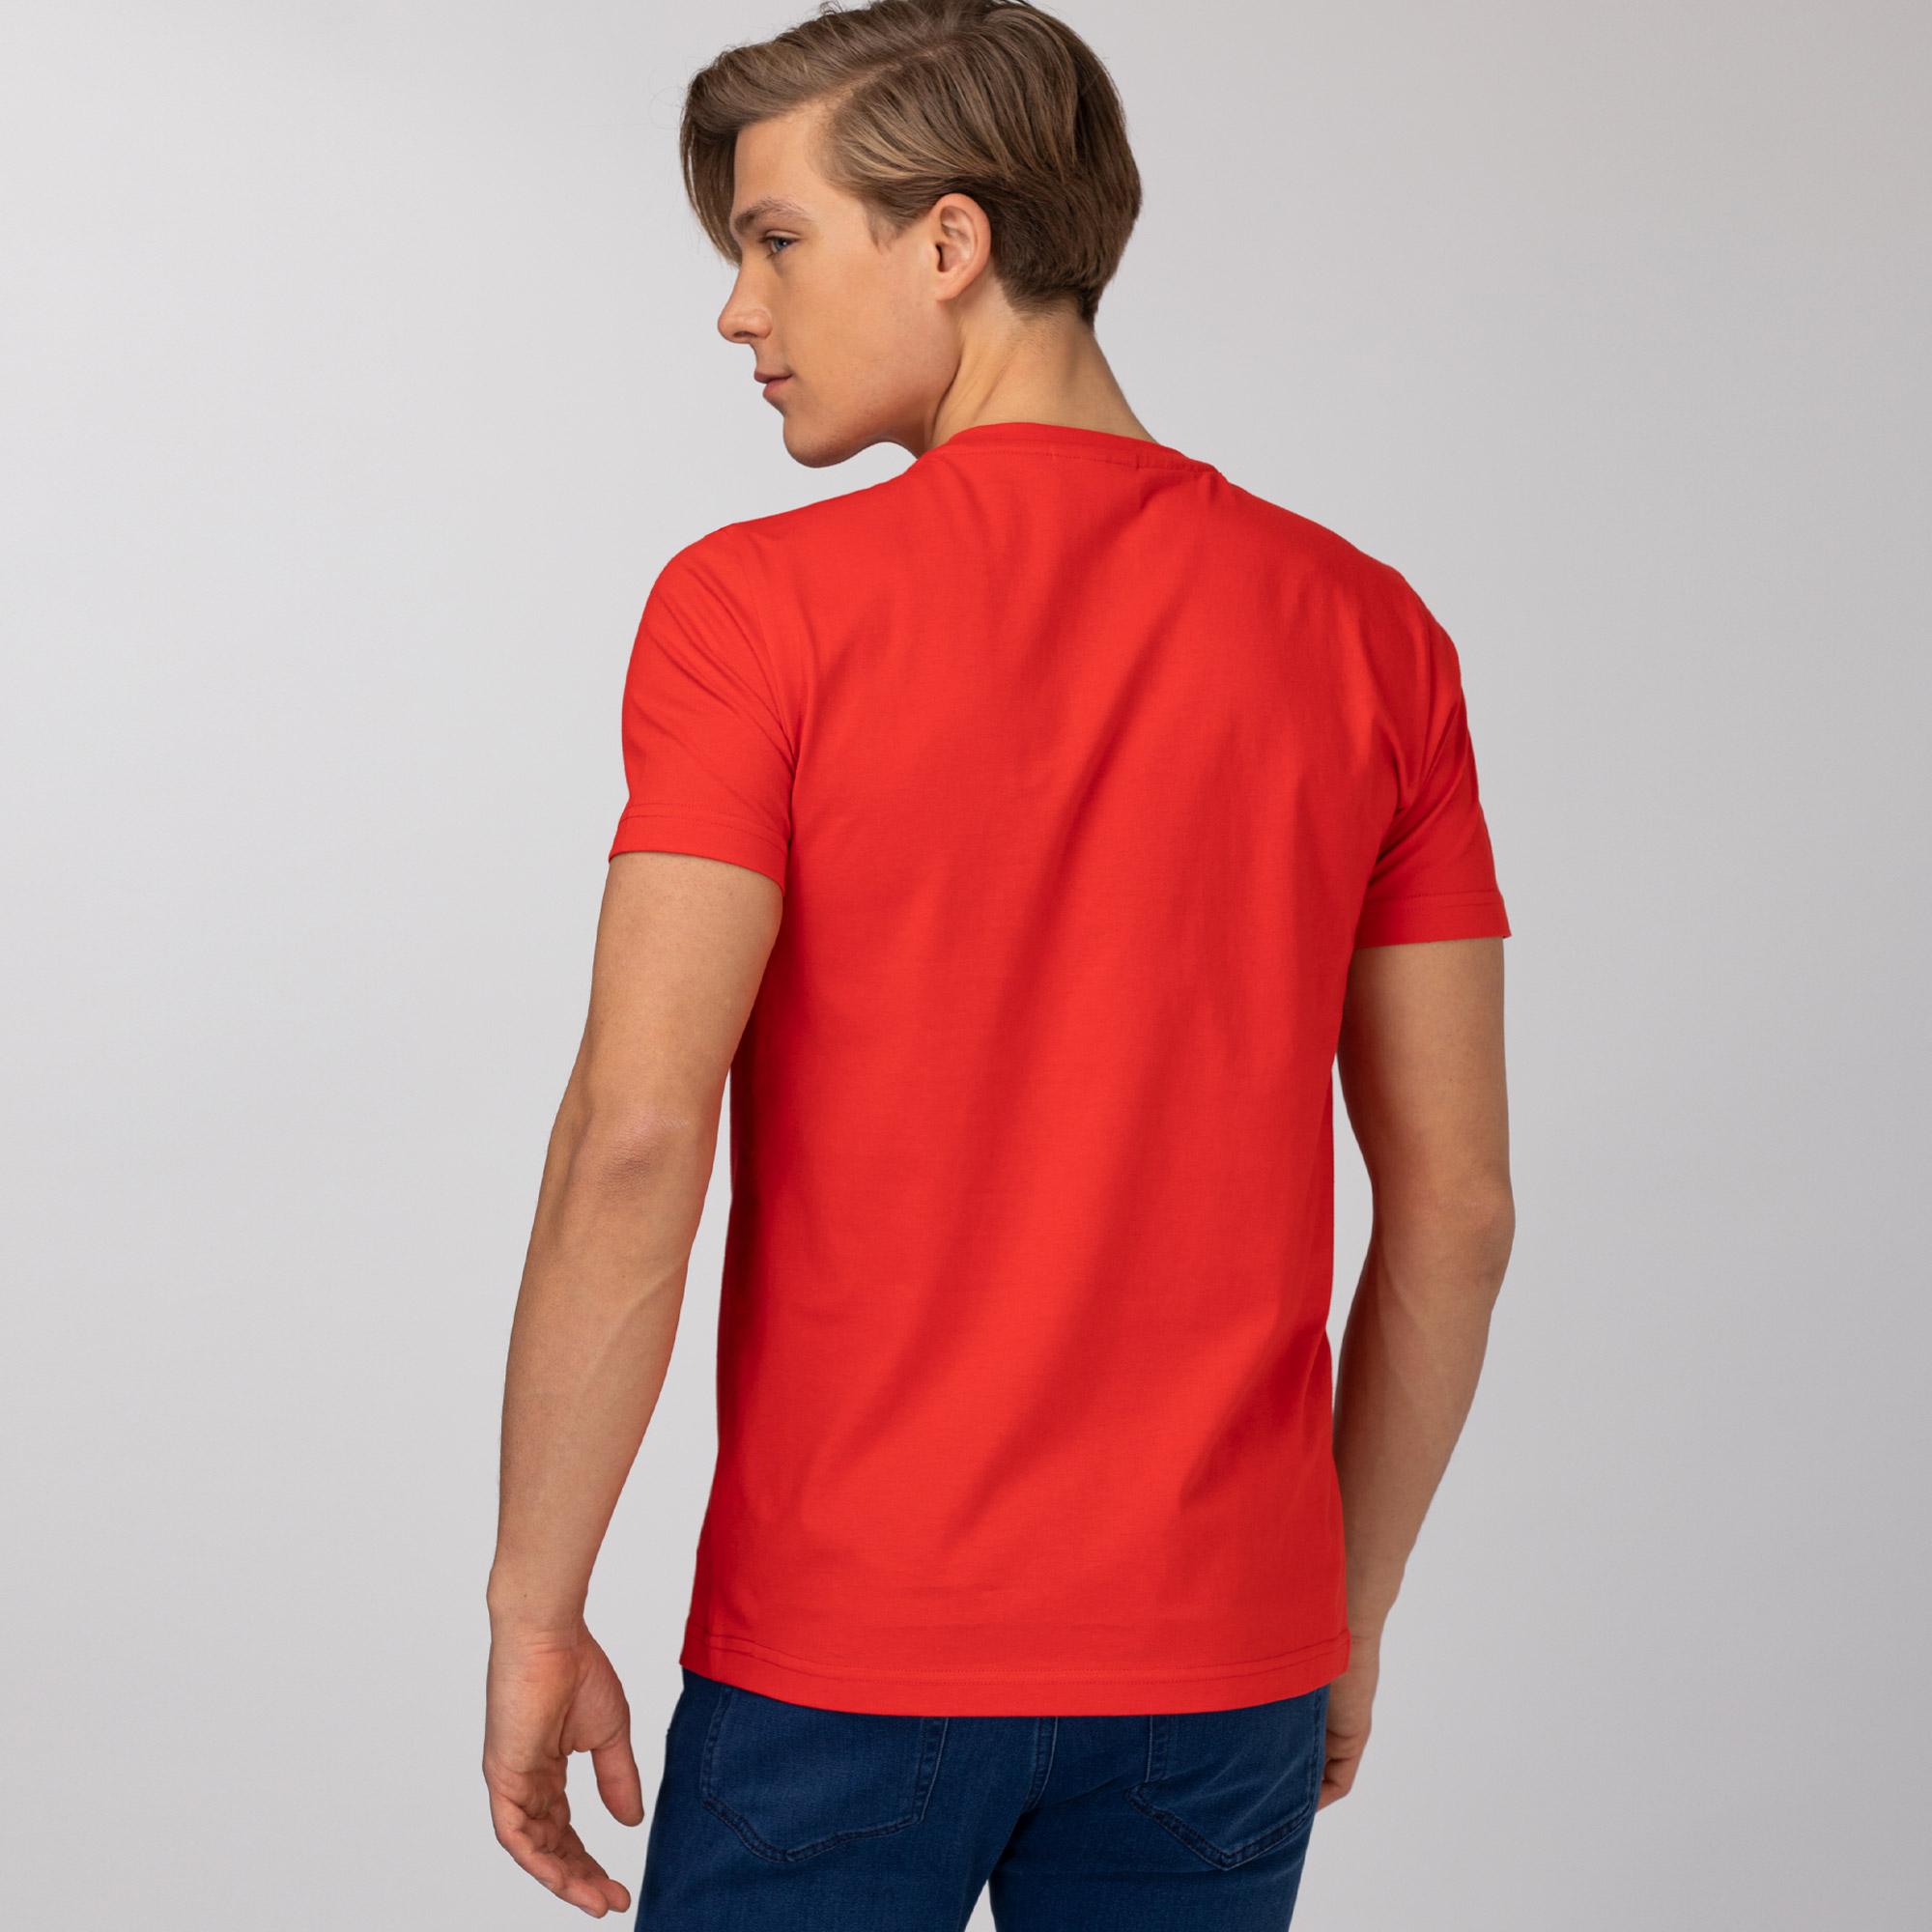 Lacoste Erkek Slim Fit Bisiklet Yaka Baskılı Kırmızı T-Shirt. 4